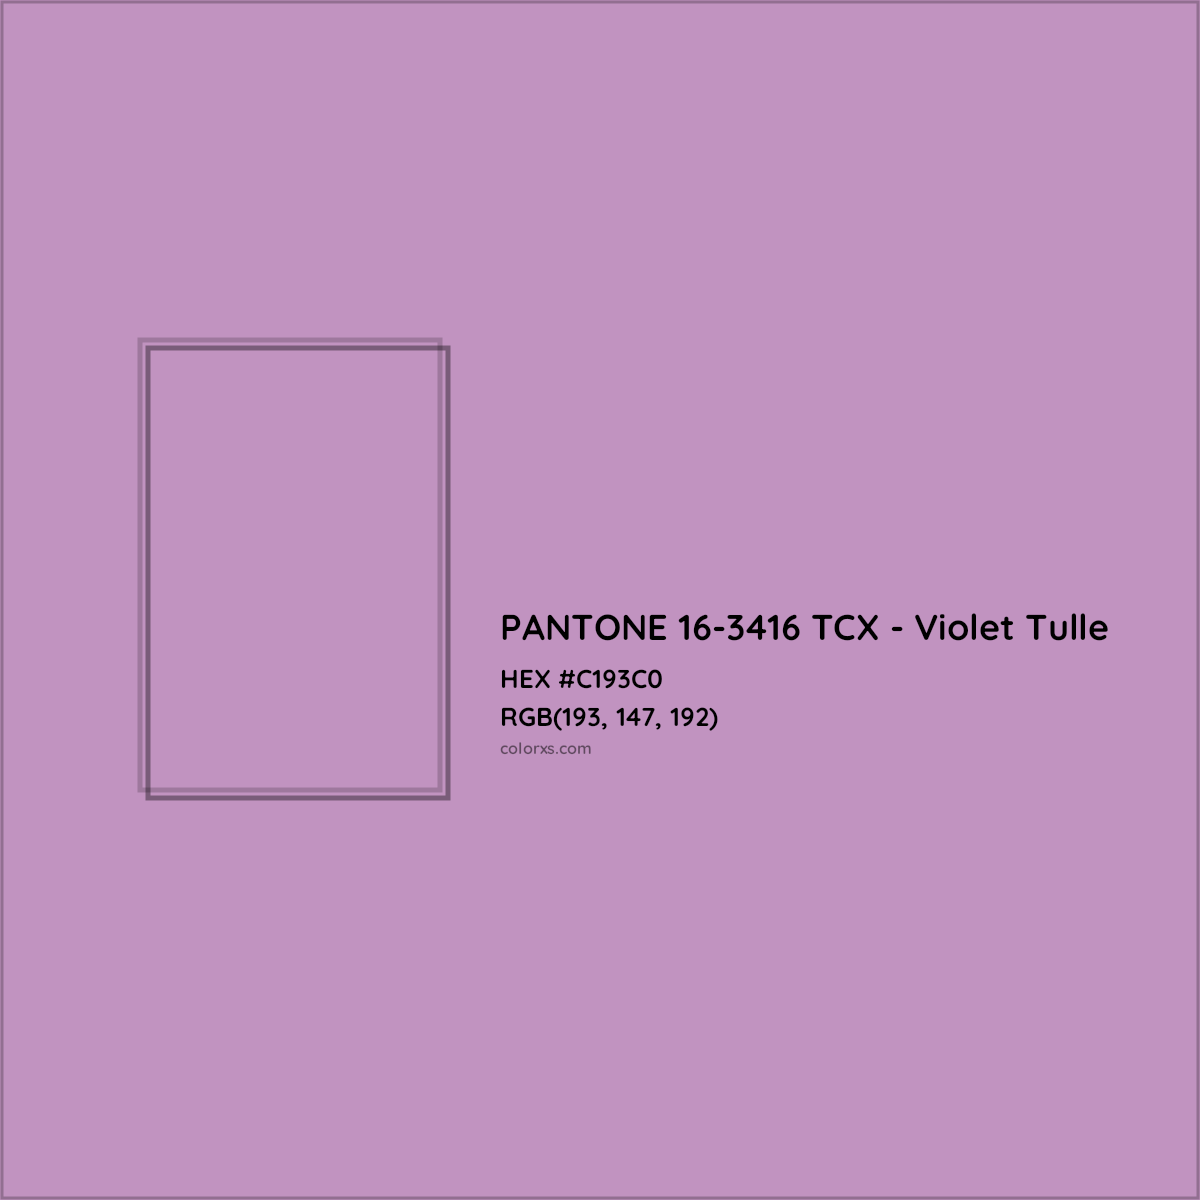 HEX #C193C0 PANTONE 16-3416 TCX - Violet Tulle CMS Pantone TCX - Color Code